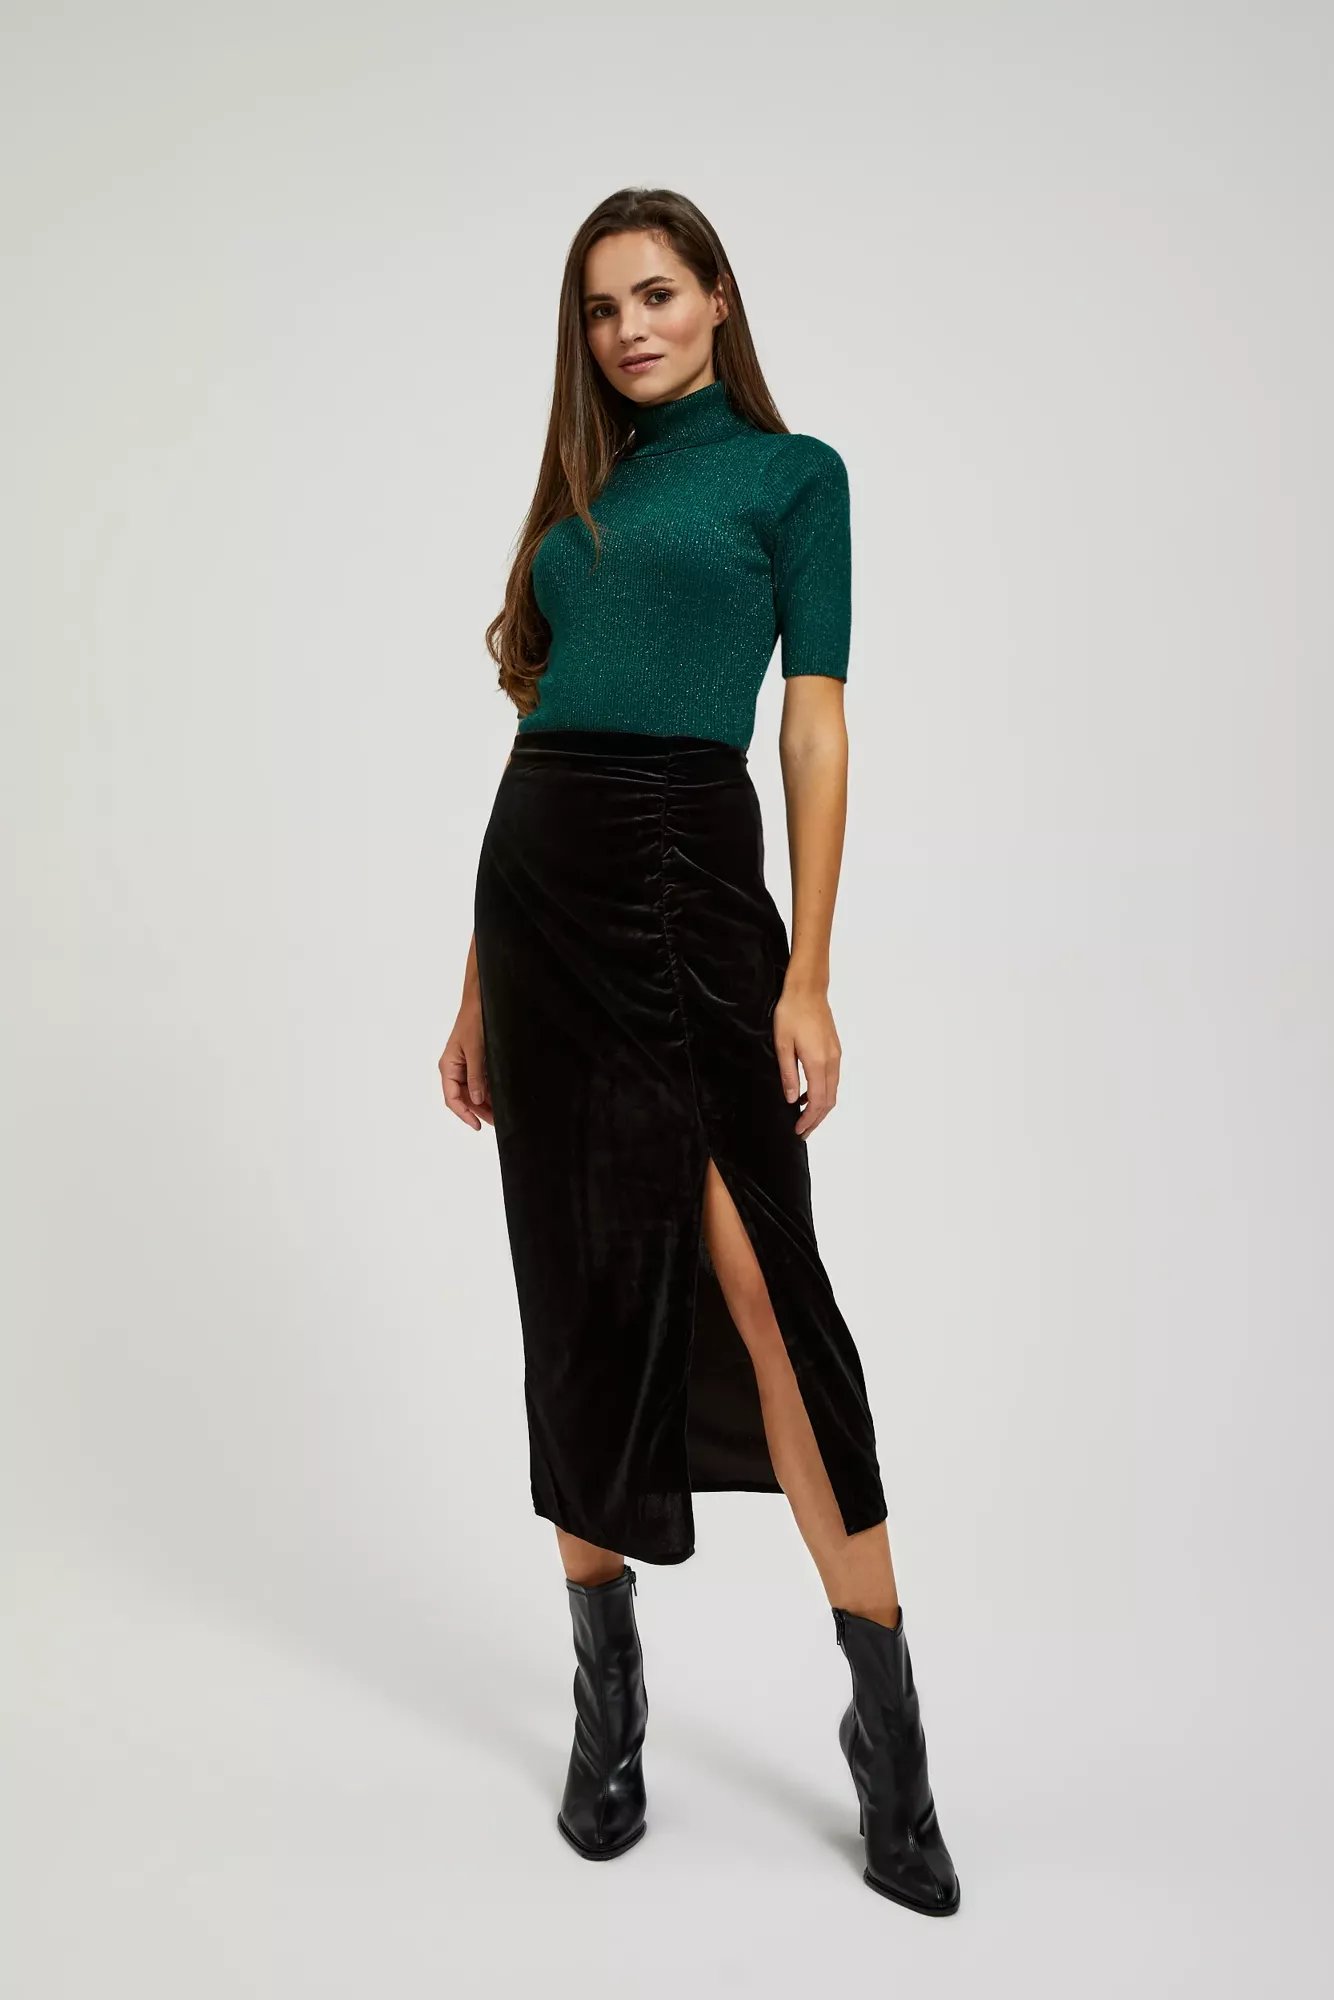 Velour skirt with slit